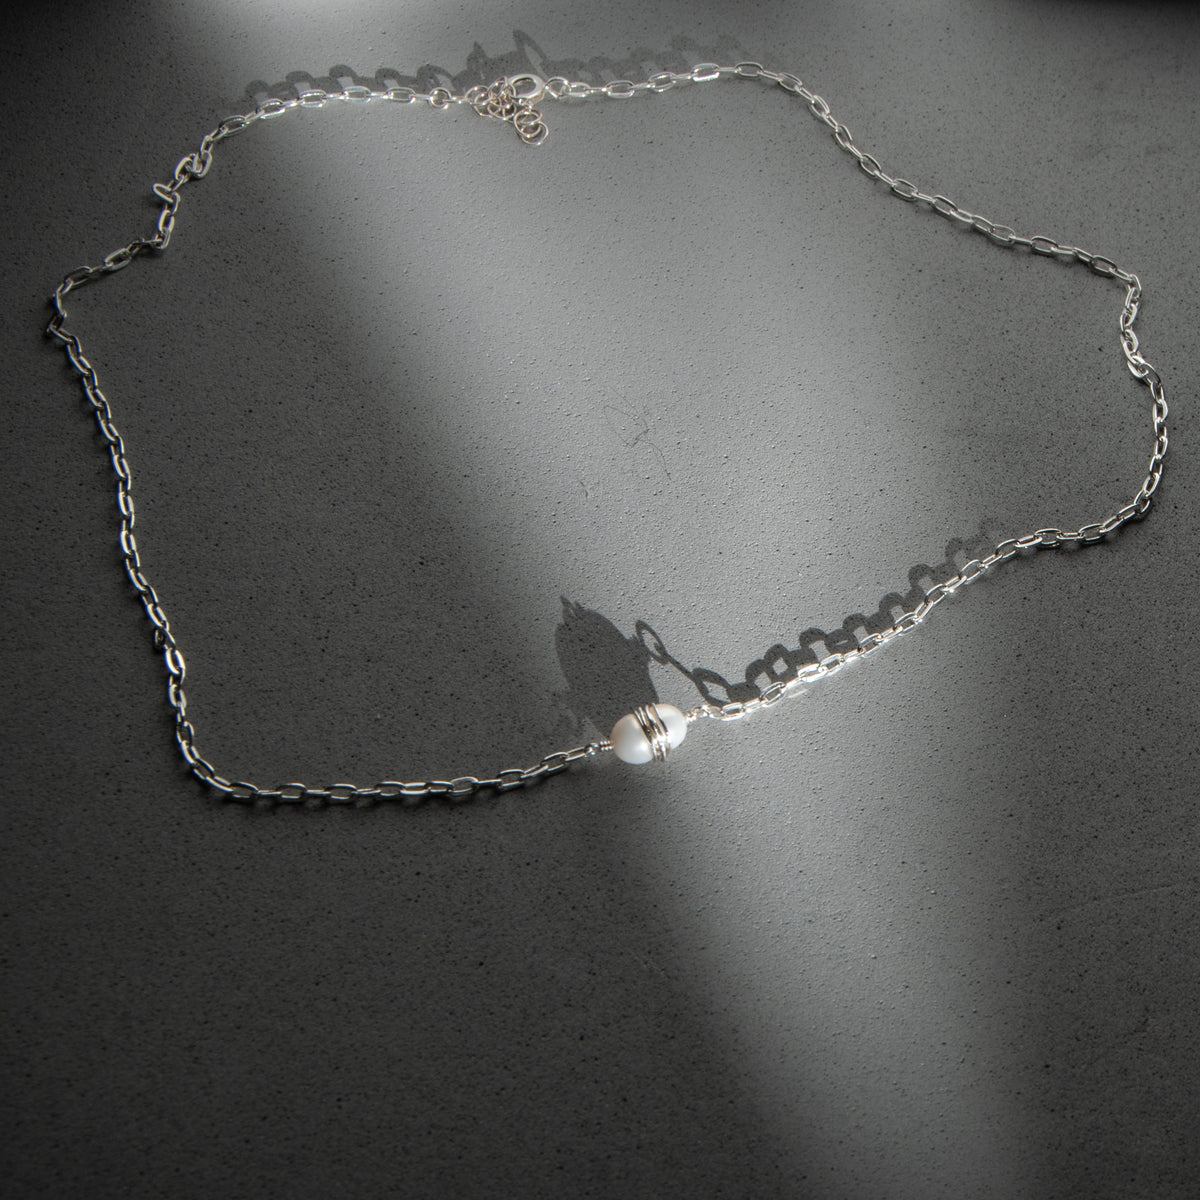 Pearl Jupiter Necklace - Sterling Silver